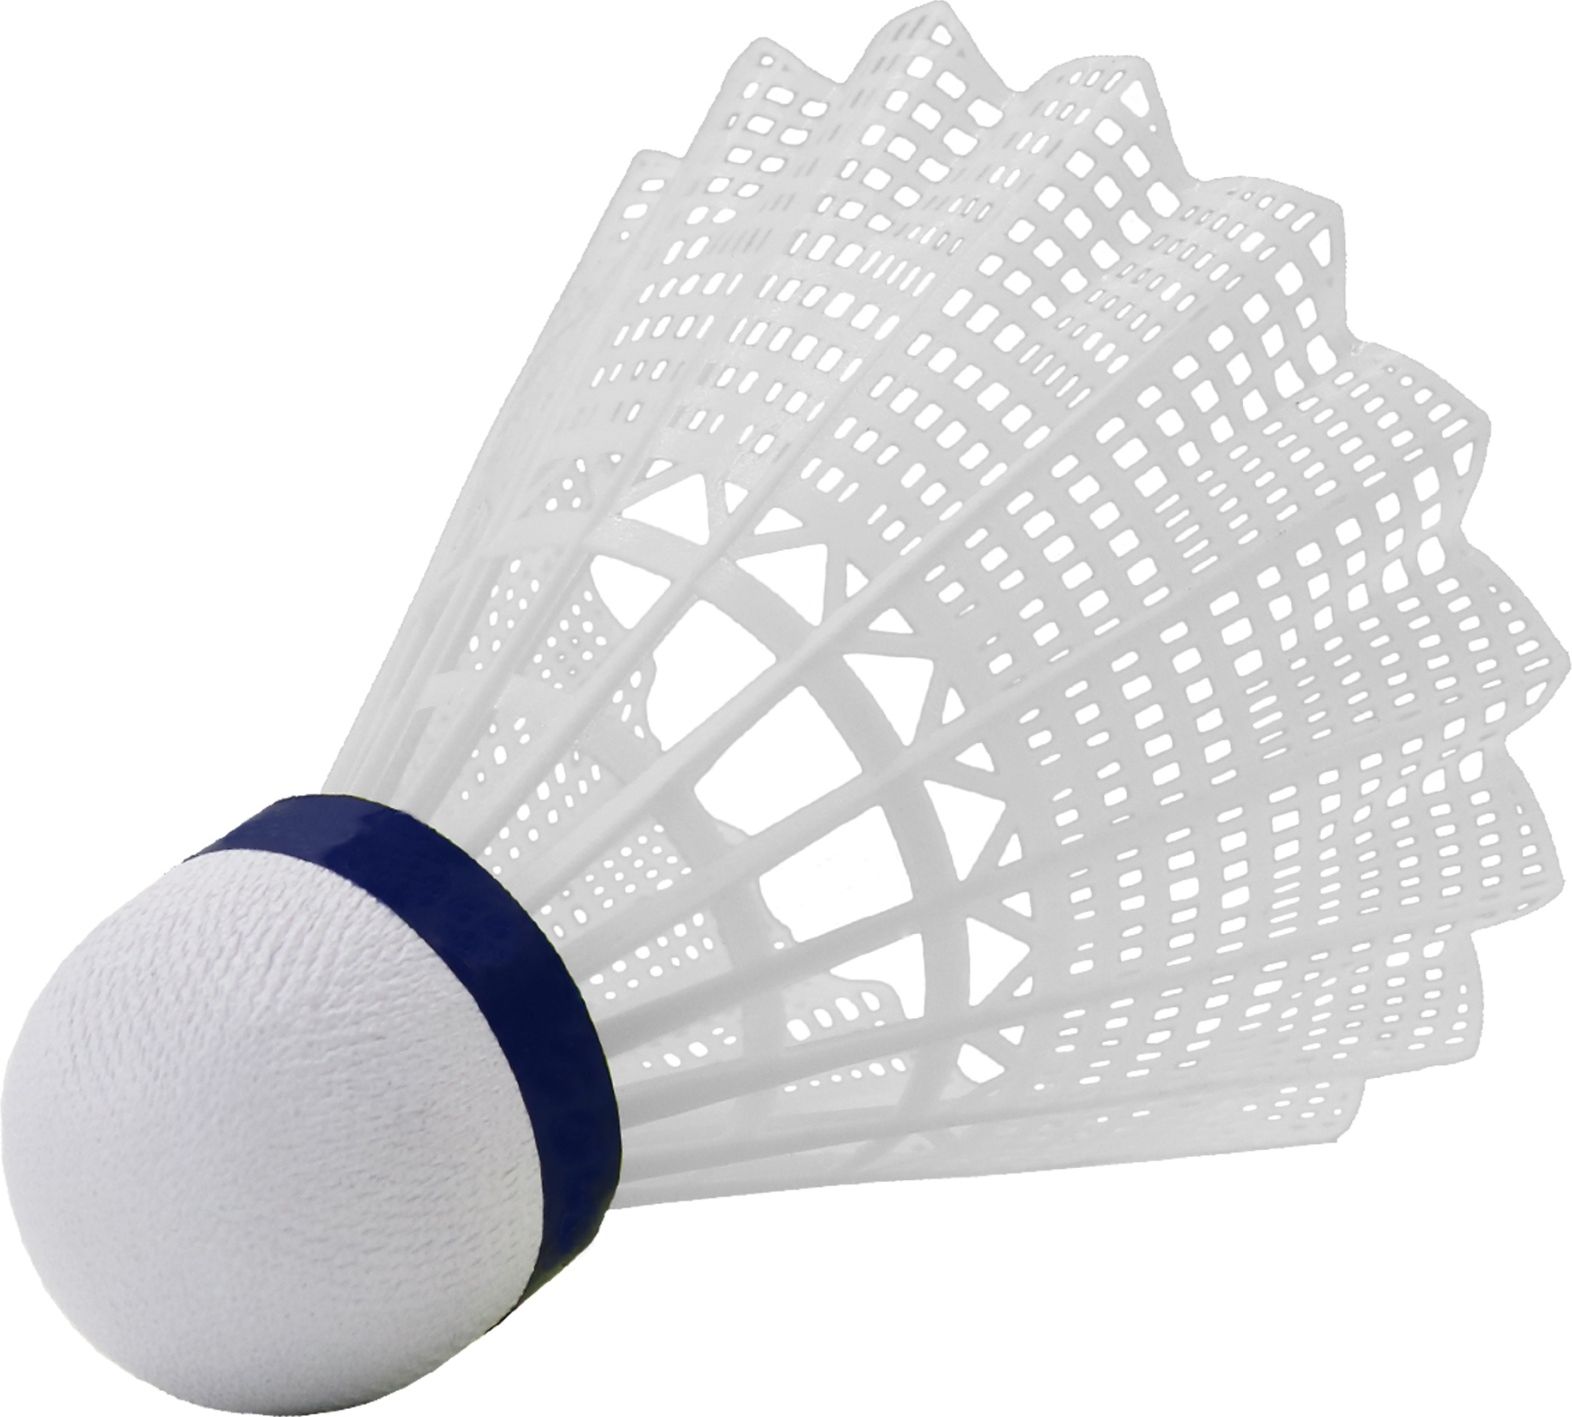 Badmintonové míčky WISH Air Flow 5000 - bílé 6ks - obrázek 1